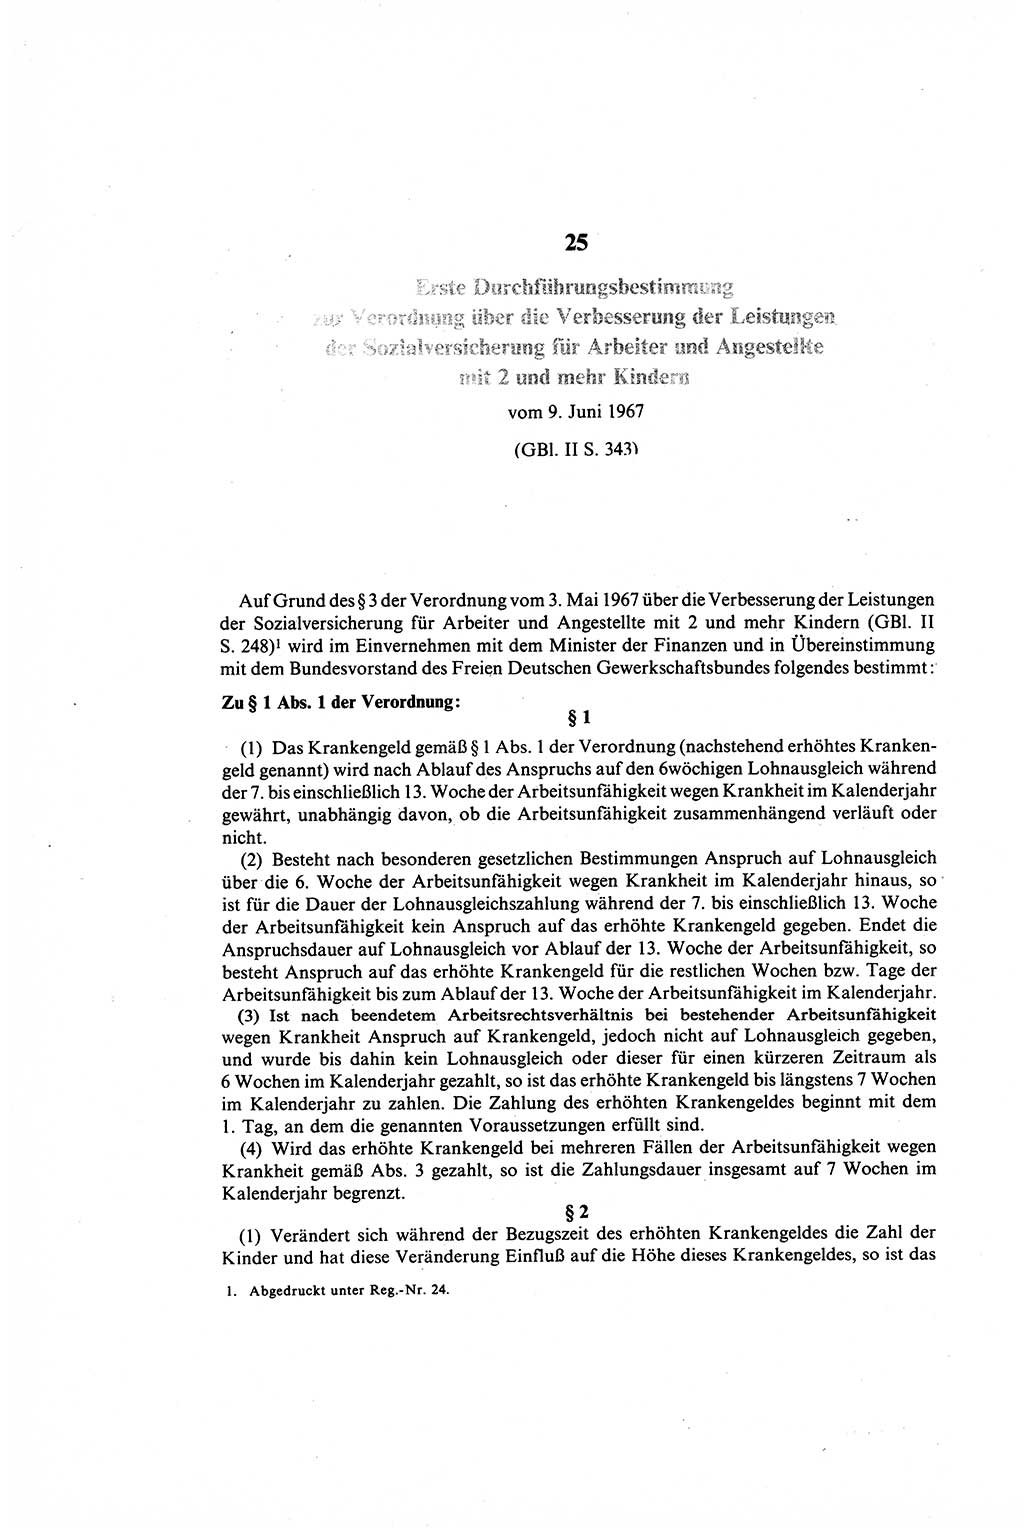 Gesetzbuch der Arbeit (GBA) und andere ausgewählte rechtliche Bestimmungen [Deutsche Demokratische Republik (DDR)] 1968, Seite 320 (GBA DDR 1968, S. 320)